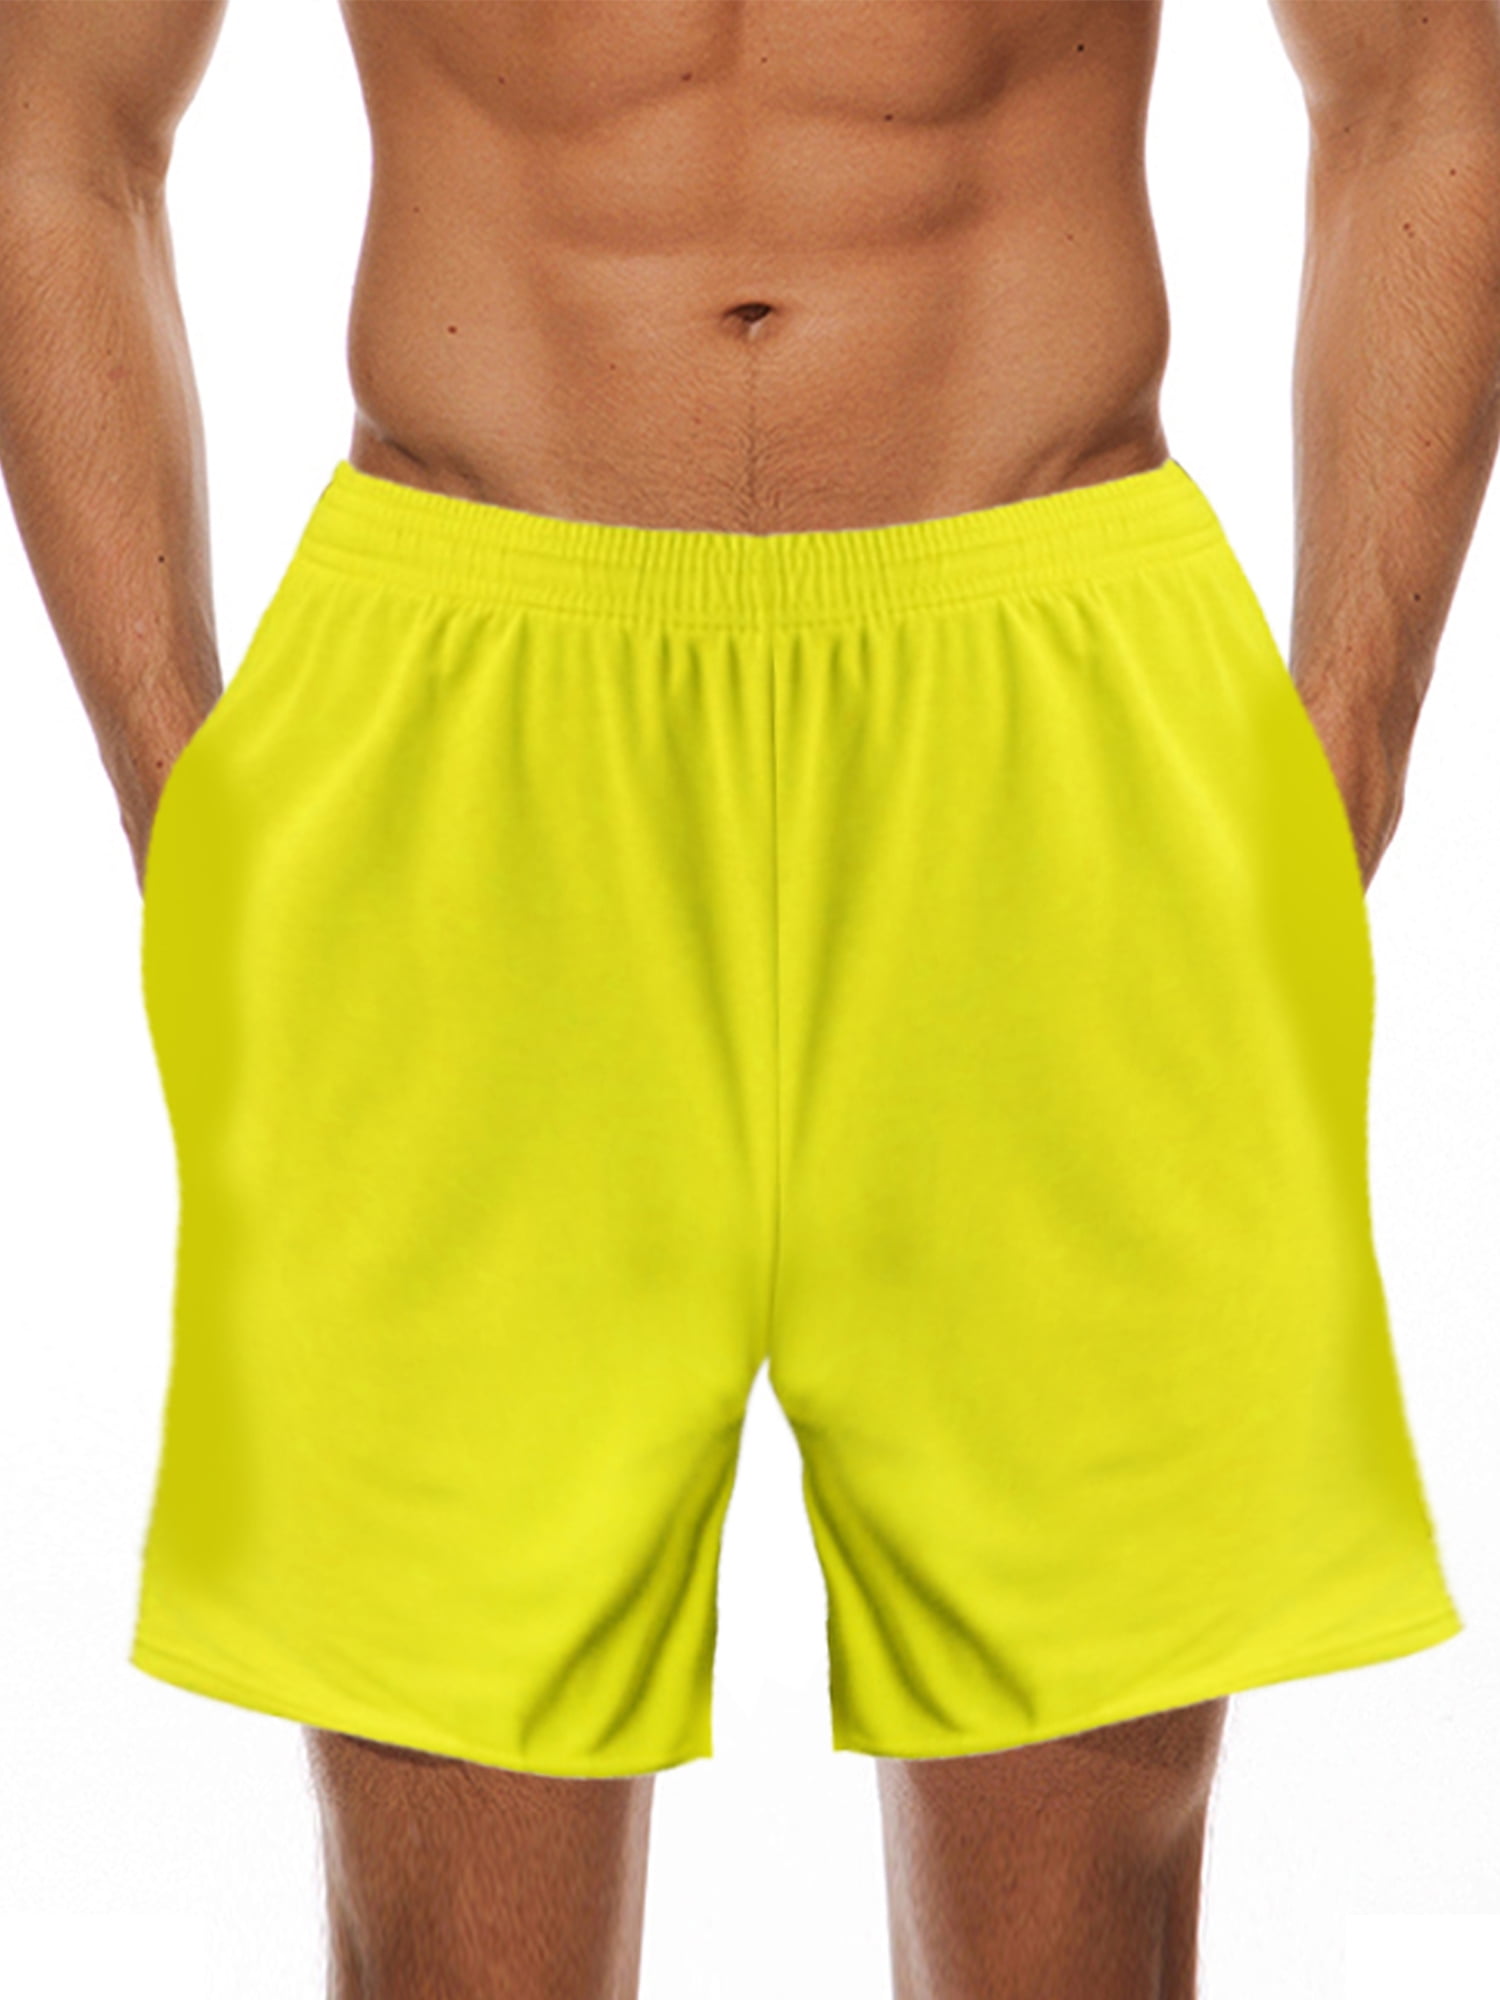 Galaxy Football Shorts Compression Base Layer Shorts Sports PE Shorts Boys/Mens/Womens